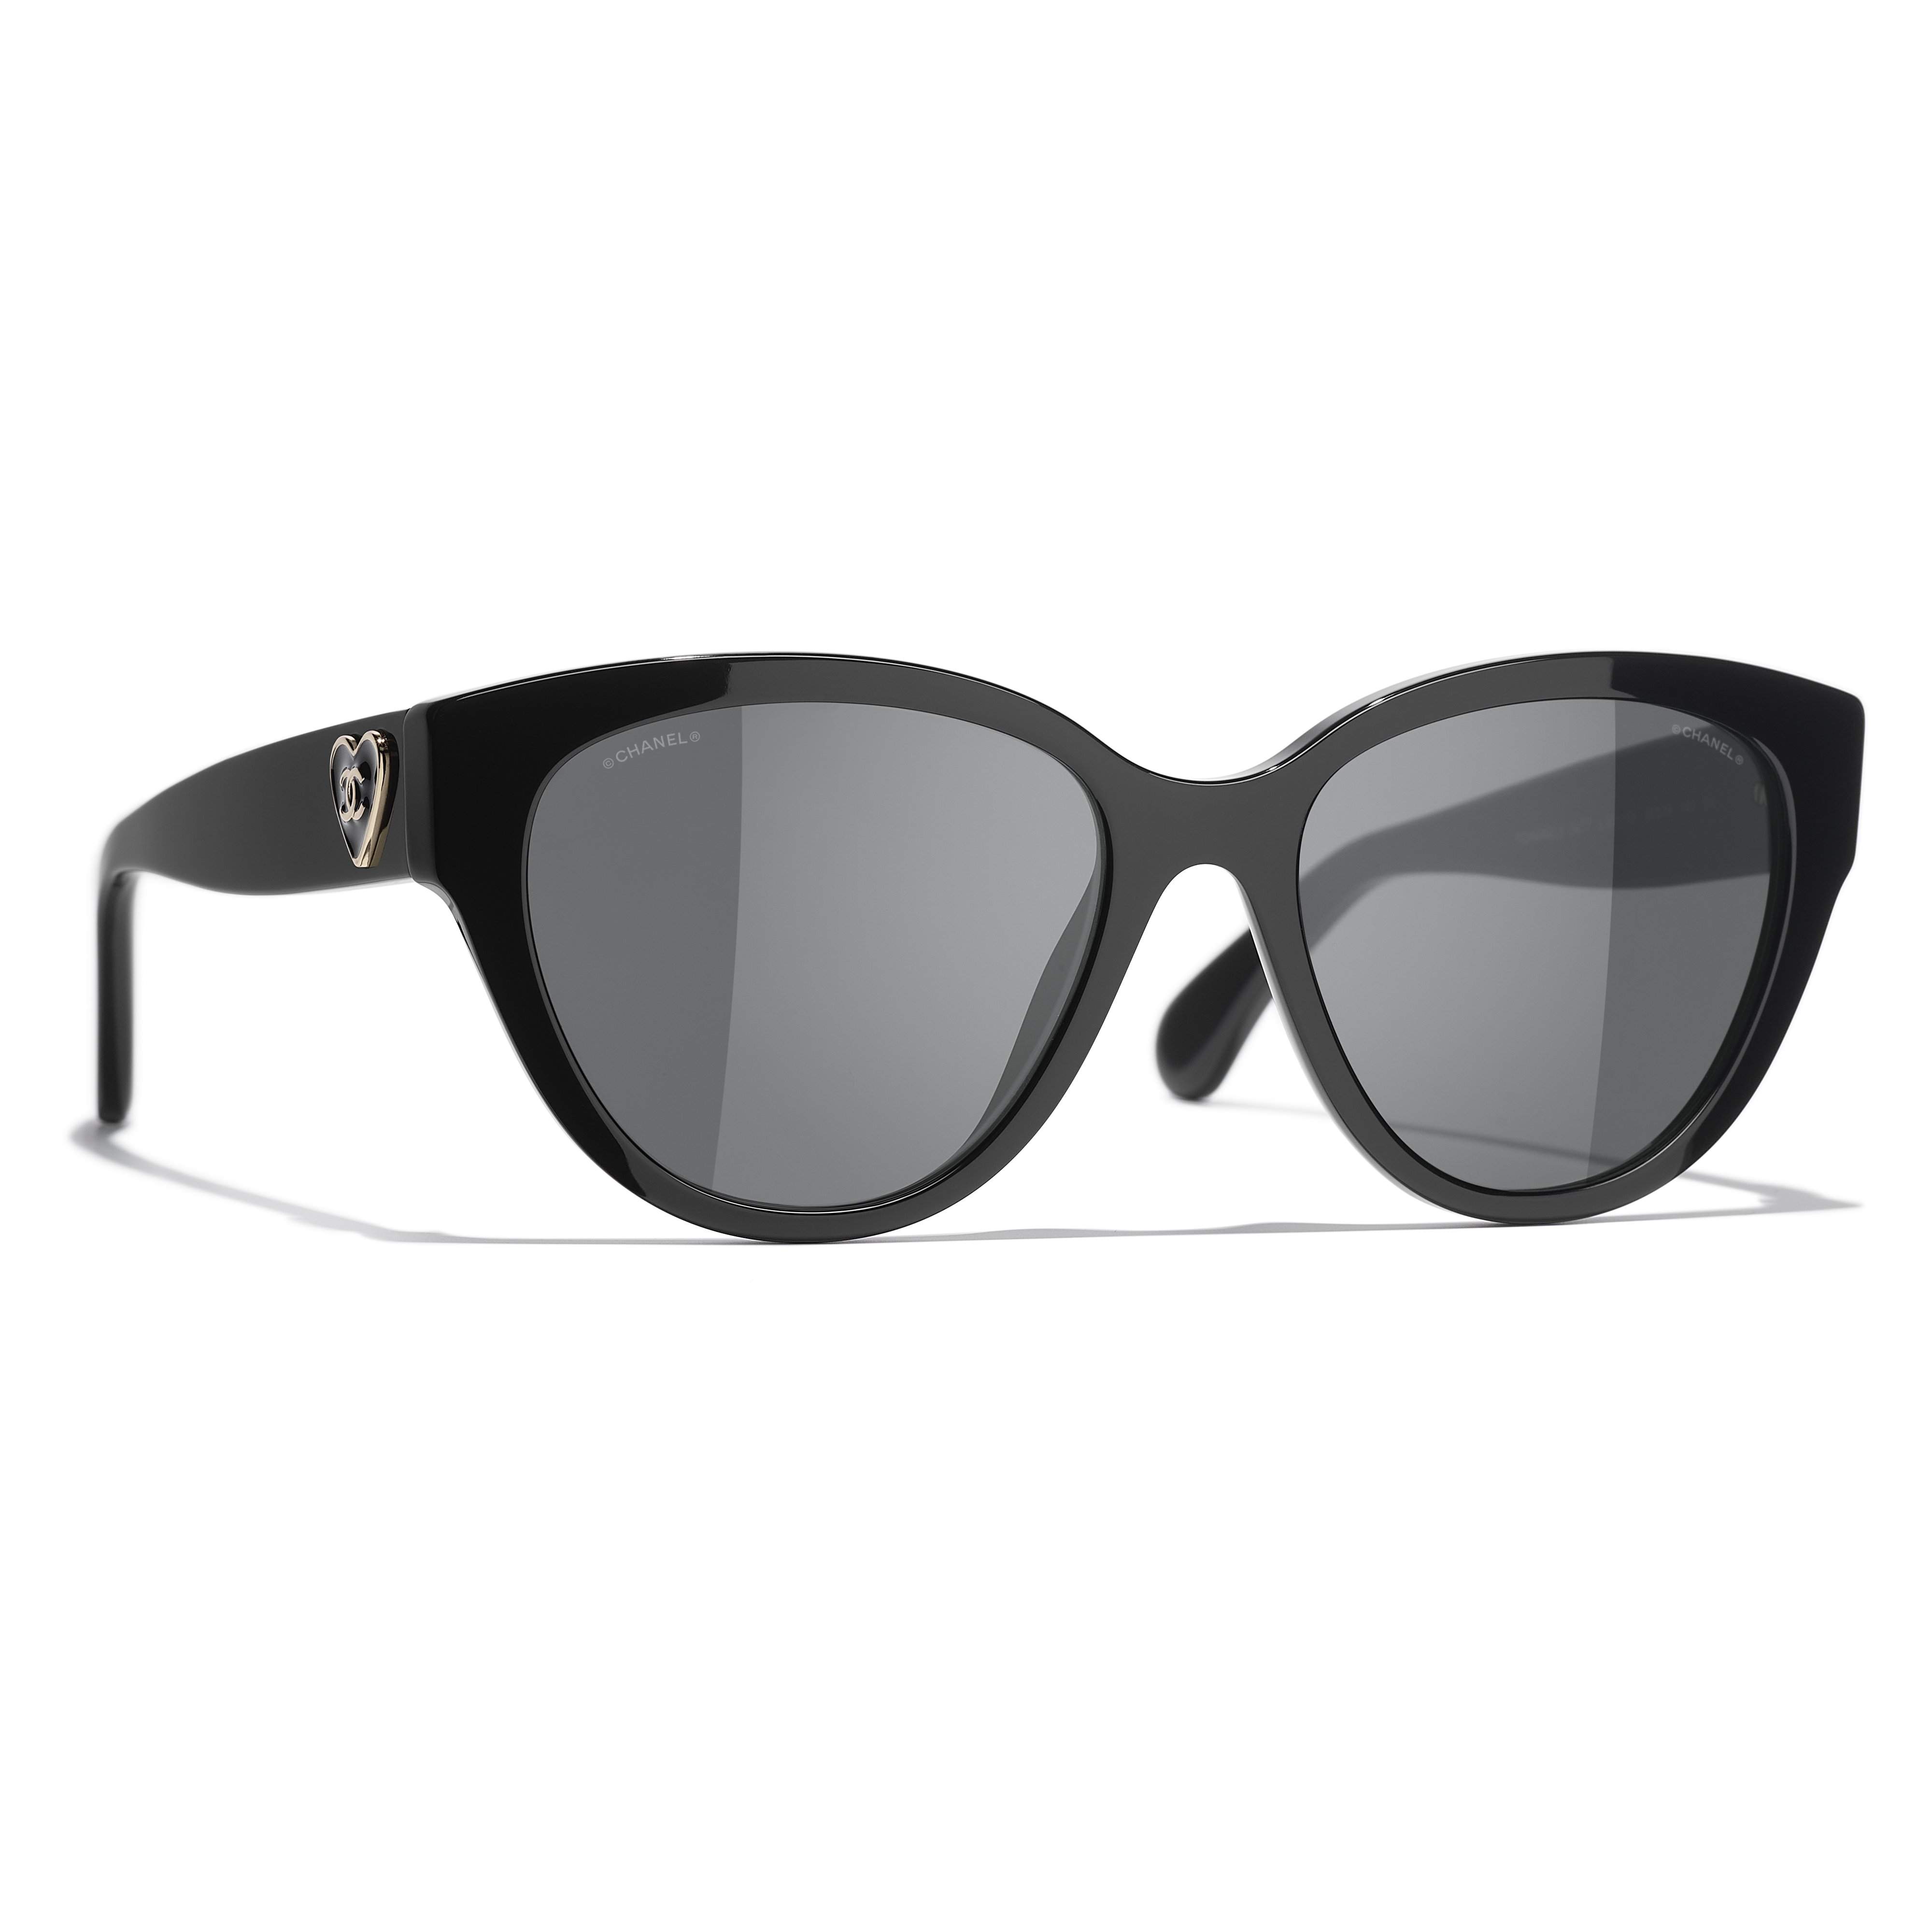 Sunglasses Chanel Black in Plastic - 23431077